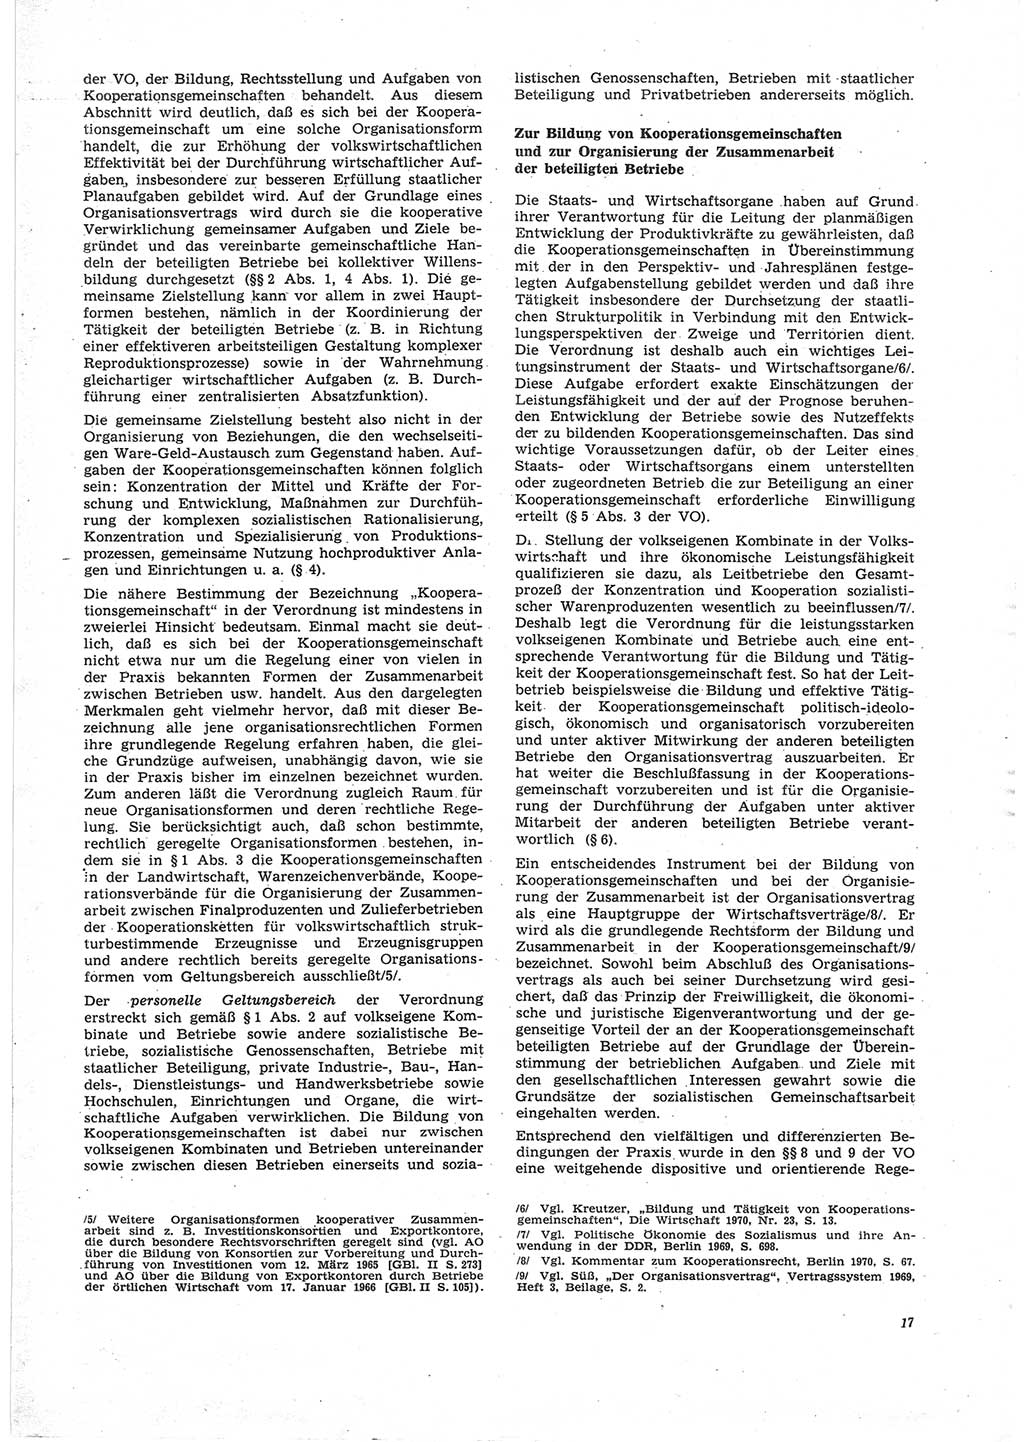 Neue Justiz (NJ), Zeitschrift für Recht und Rechtswissenschaft [Deutsche Demokratische Republik (DDR)], 25. Jahrgang 1971, Seite 17 (NJ DDR 1971, S. 17)